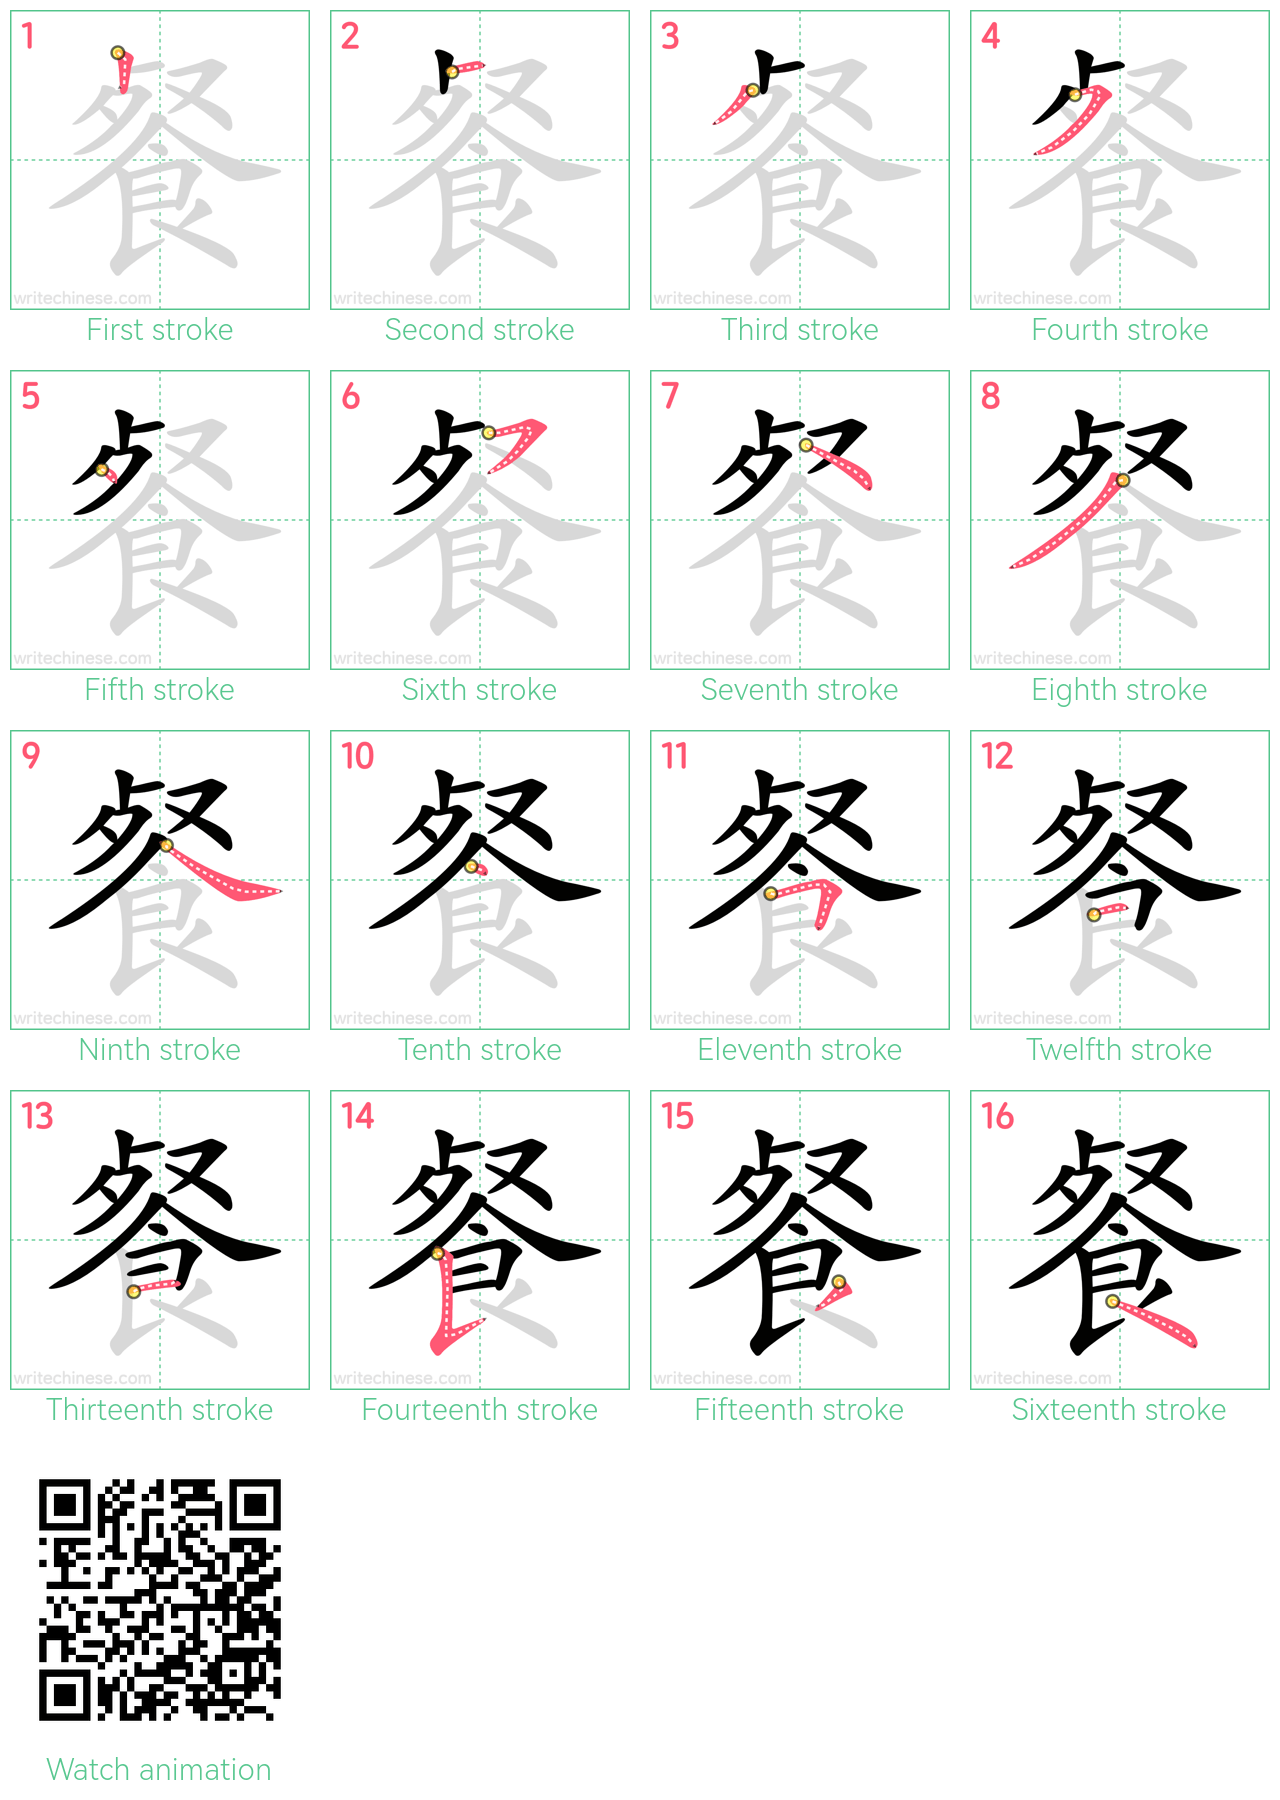 餐 step-by-step stroke order diagrams